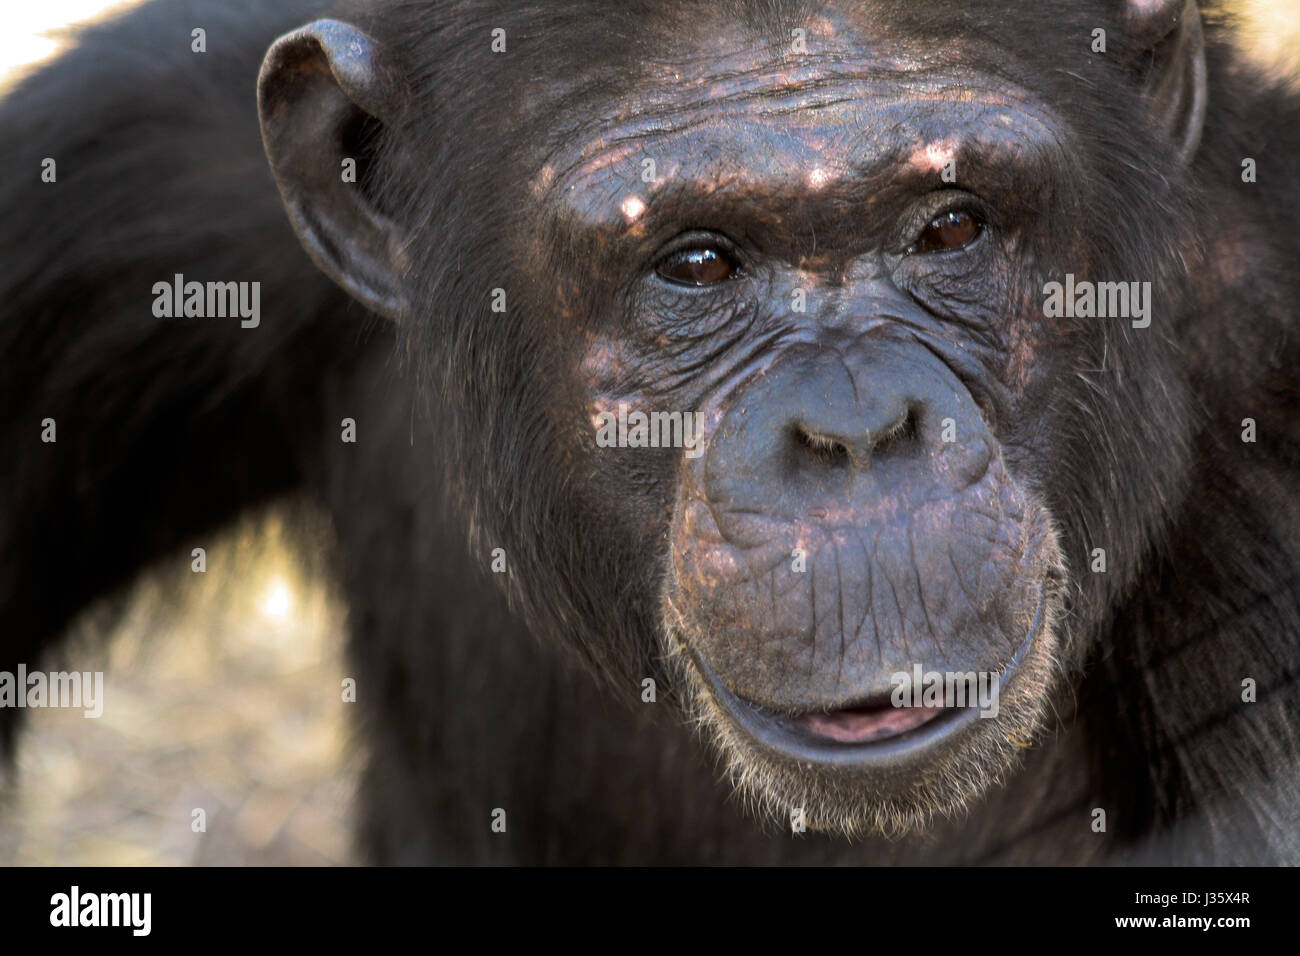 A female chimpanzee (Pan troglodytes) poses for a portrait. Sweetwaters Chimpanzee Sanctuary, Kenya. Stock Photo